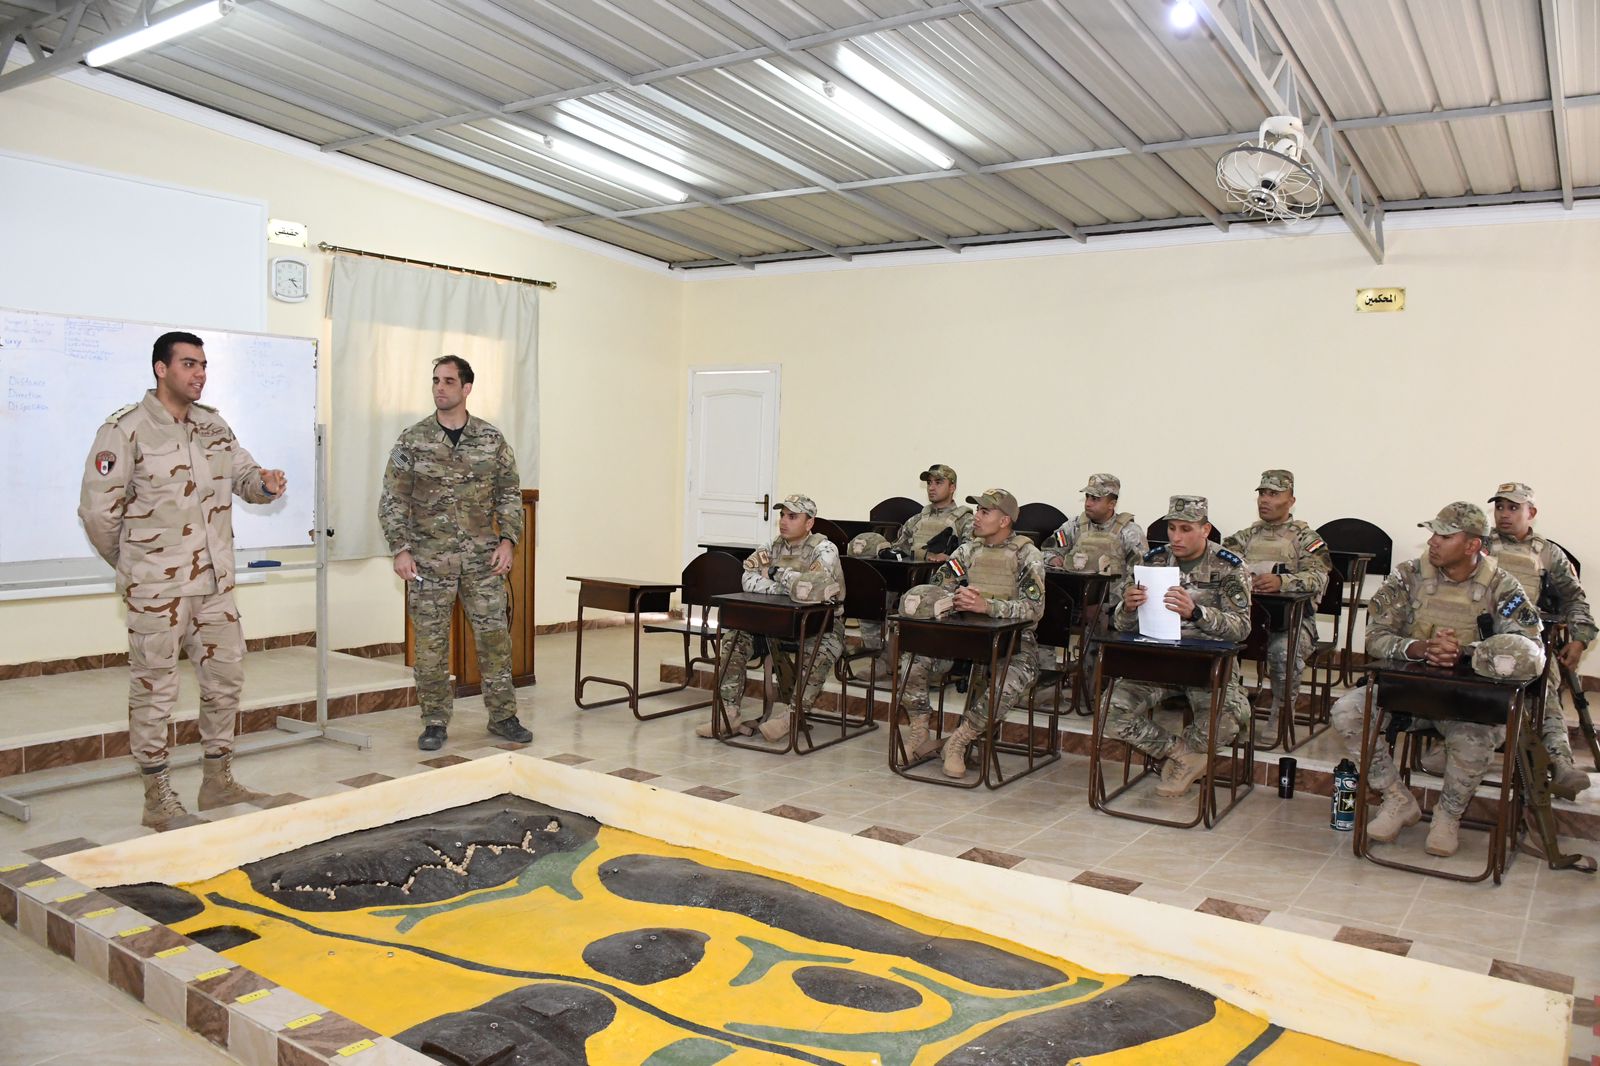  فعاليات التدريب المشترك (SOF02) بين القوات الخاصة المصرية والأمريكية 